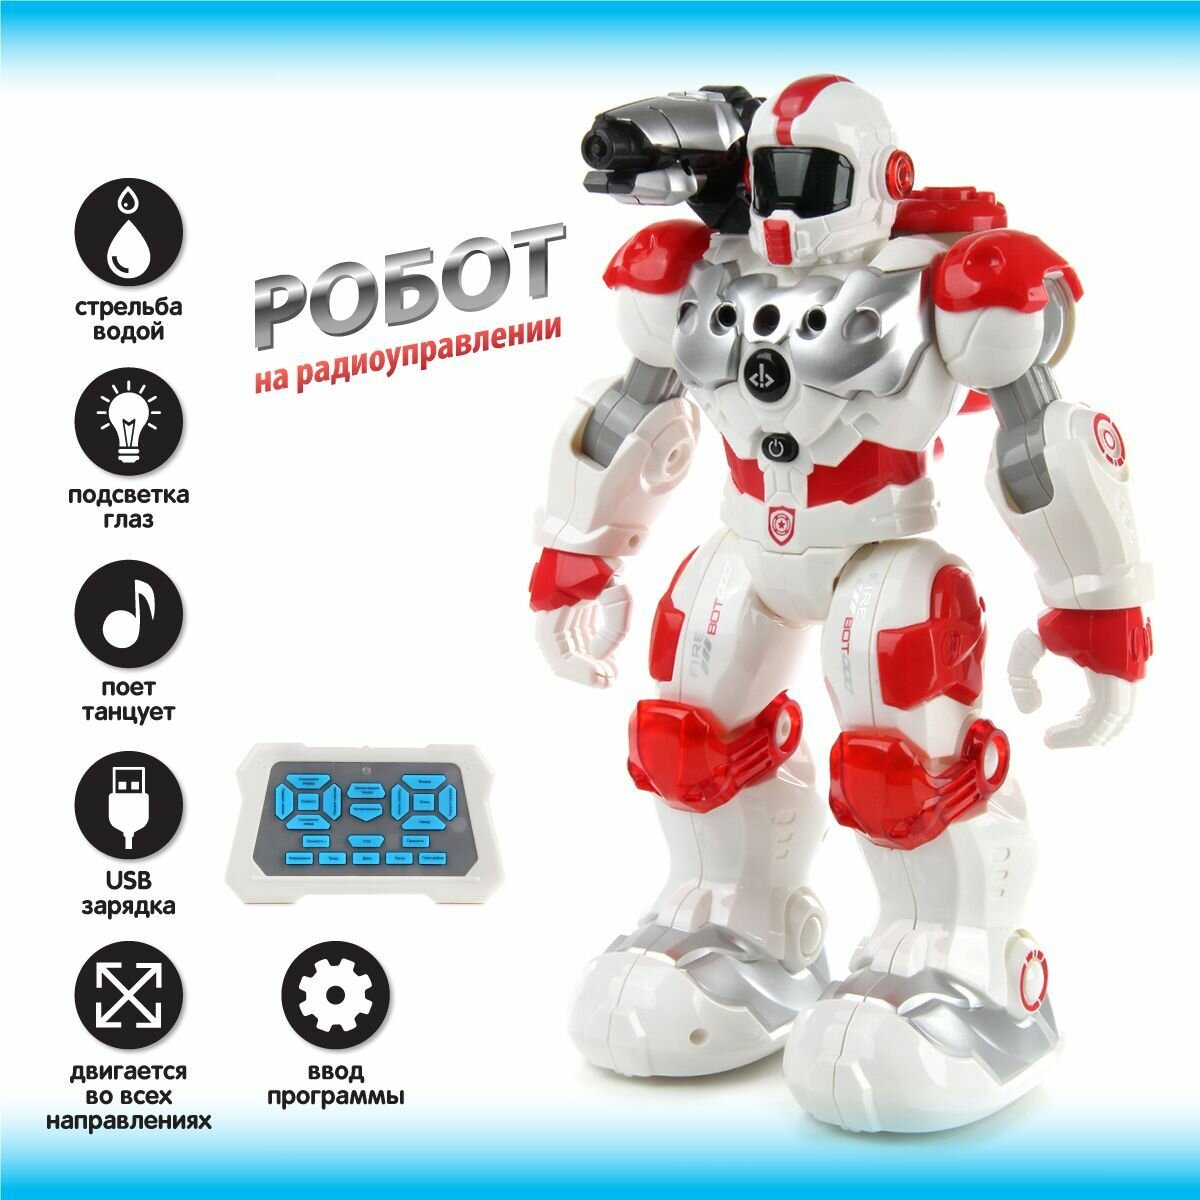 Игрушечный робот на радиоуправлении, Veld Co / Детский боевой робот на пульте управления / Интерактивная игрушка со светом и звуком для детей